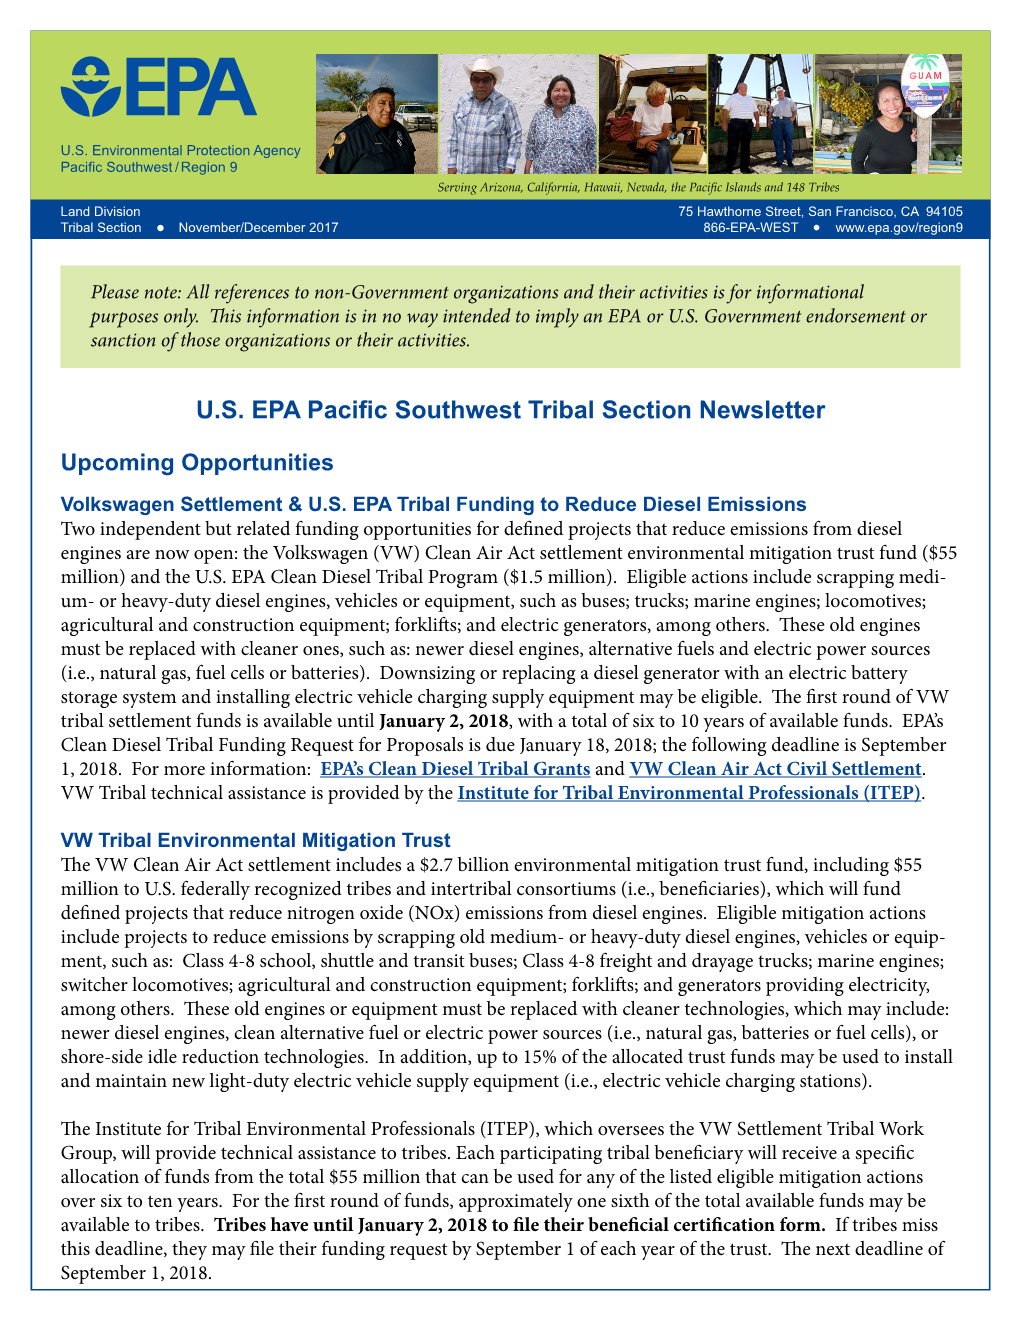 EPA Pacific Southwest Tribal Section Newsletter, November/December 2017